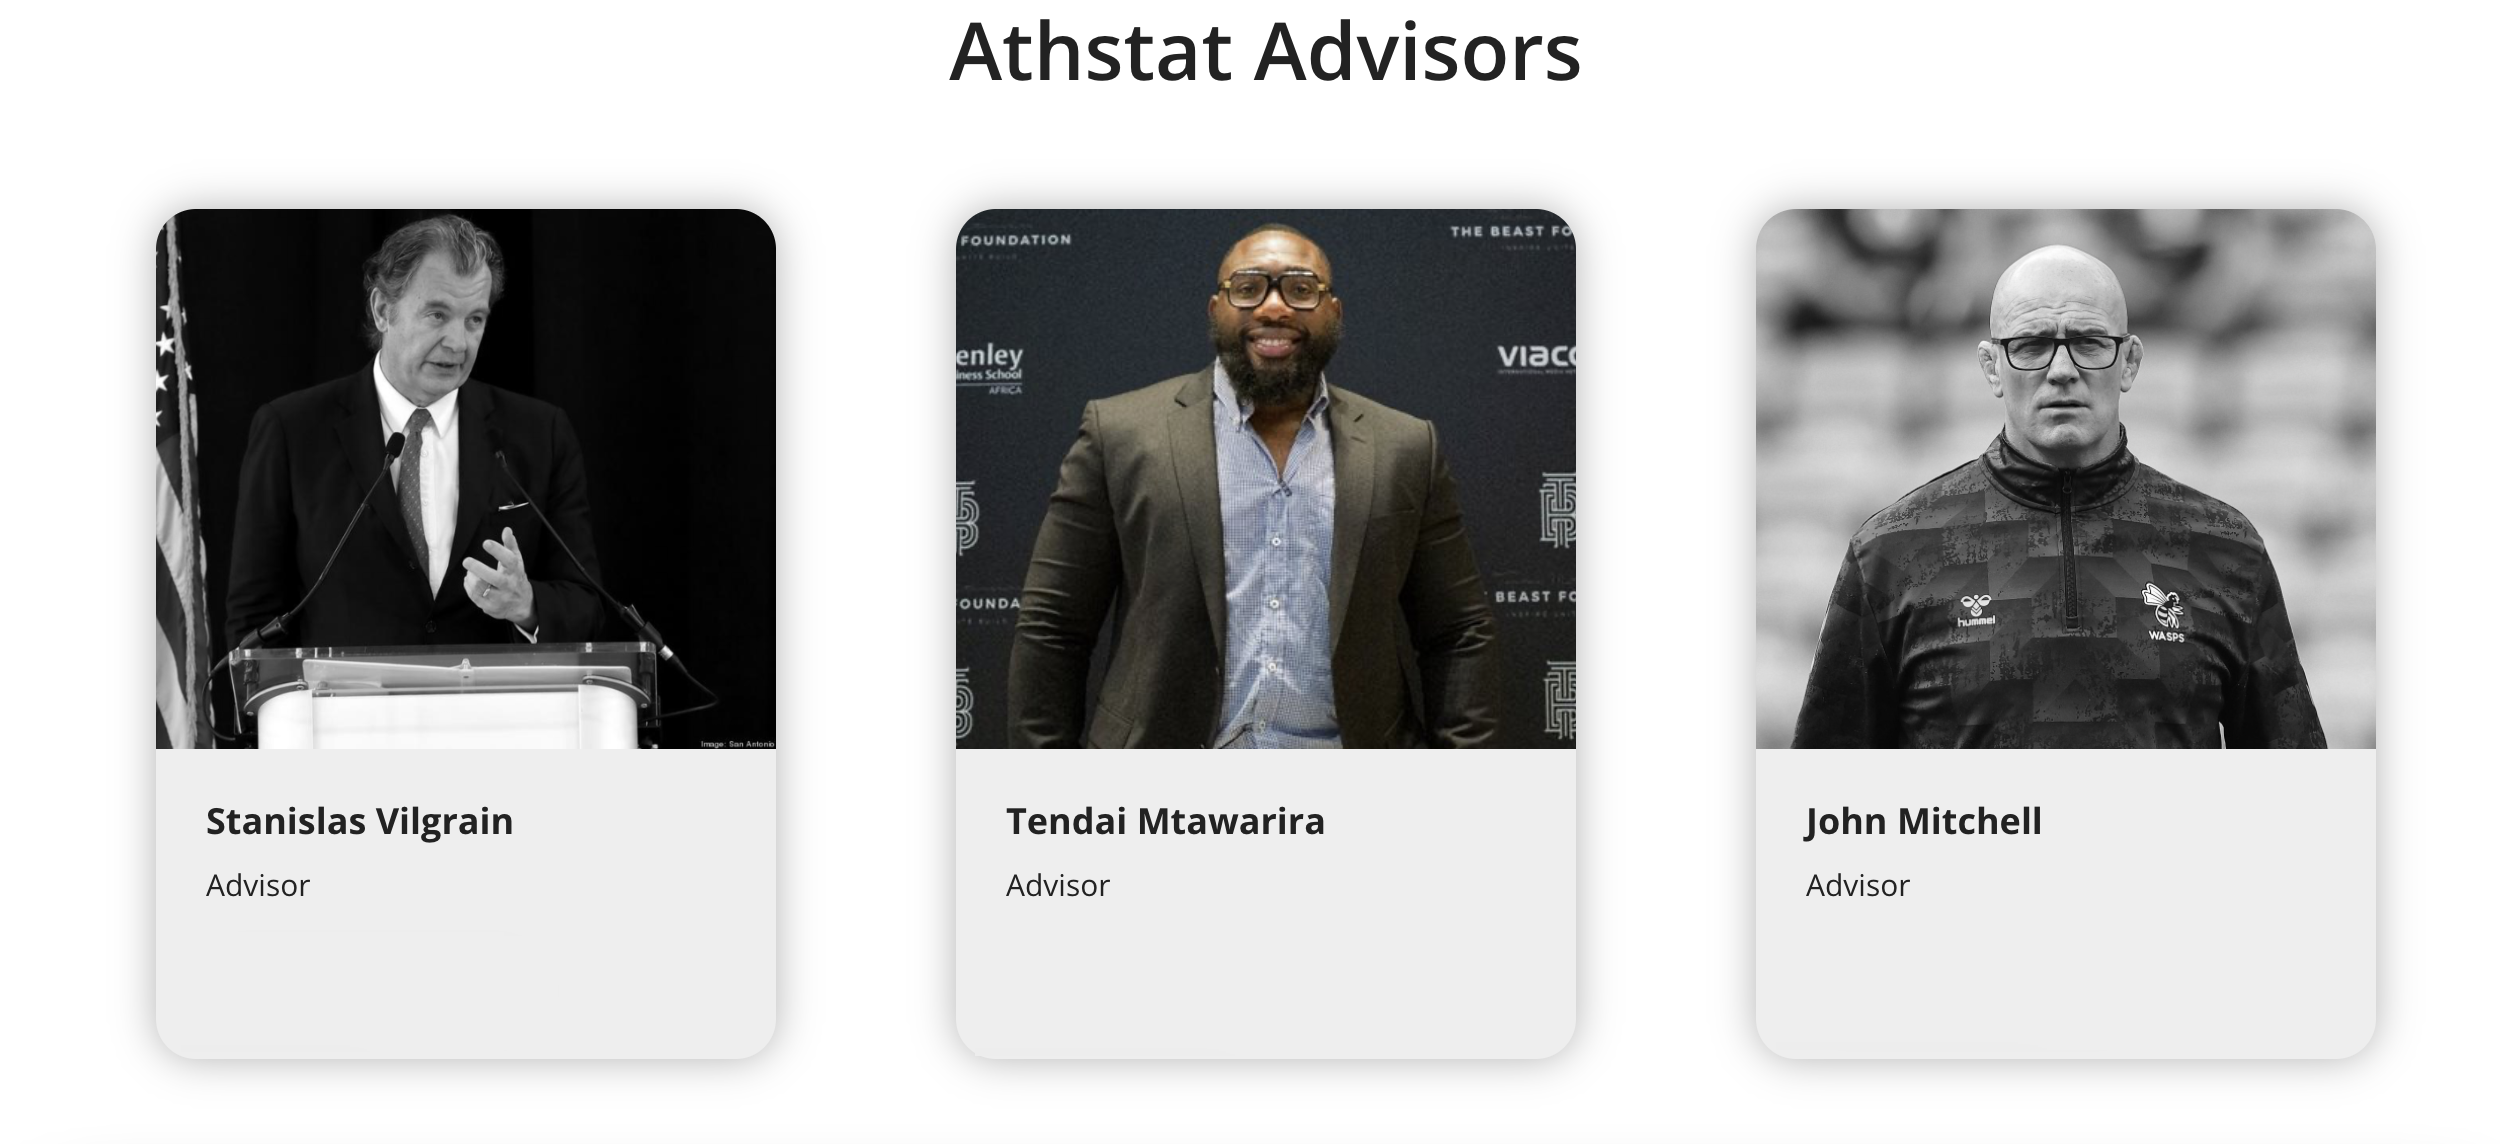 Athstat Names Company Advisors - Mtawarira, Mitchell, Vilgrain